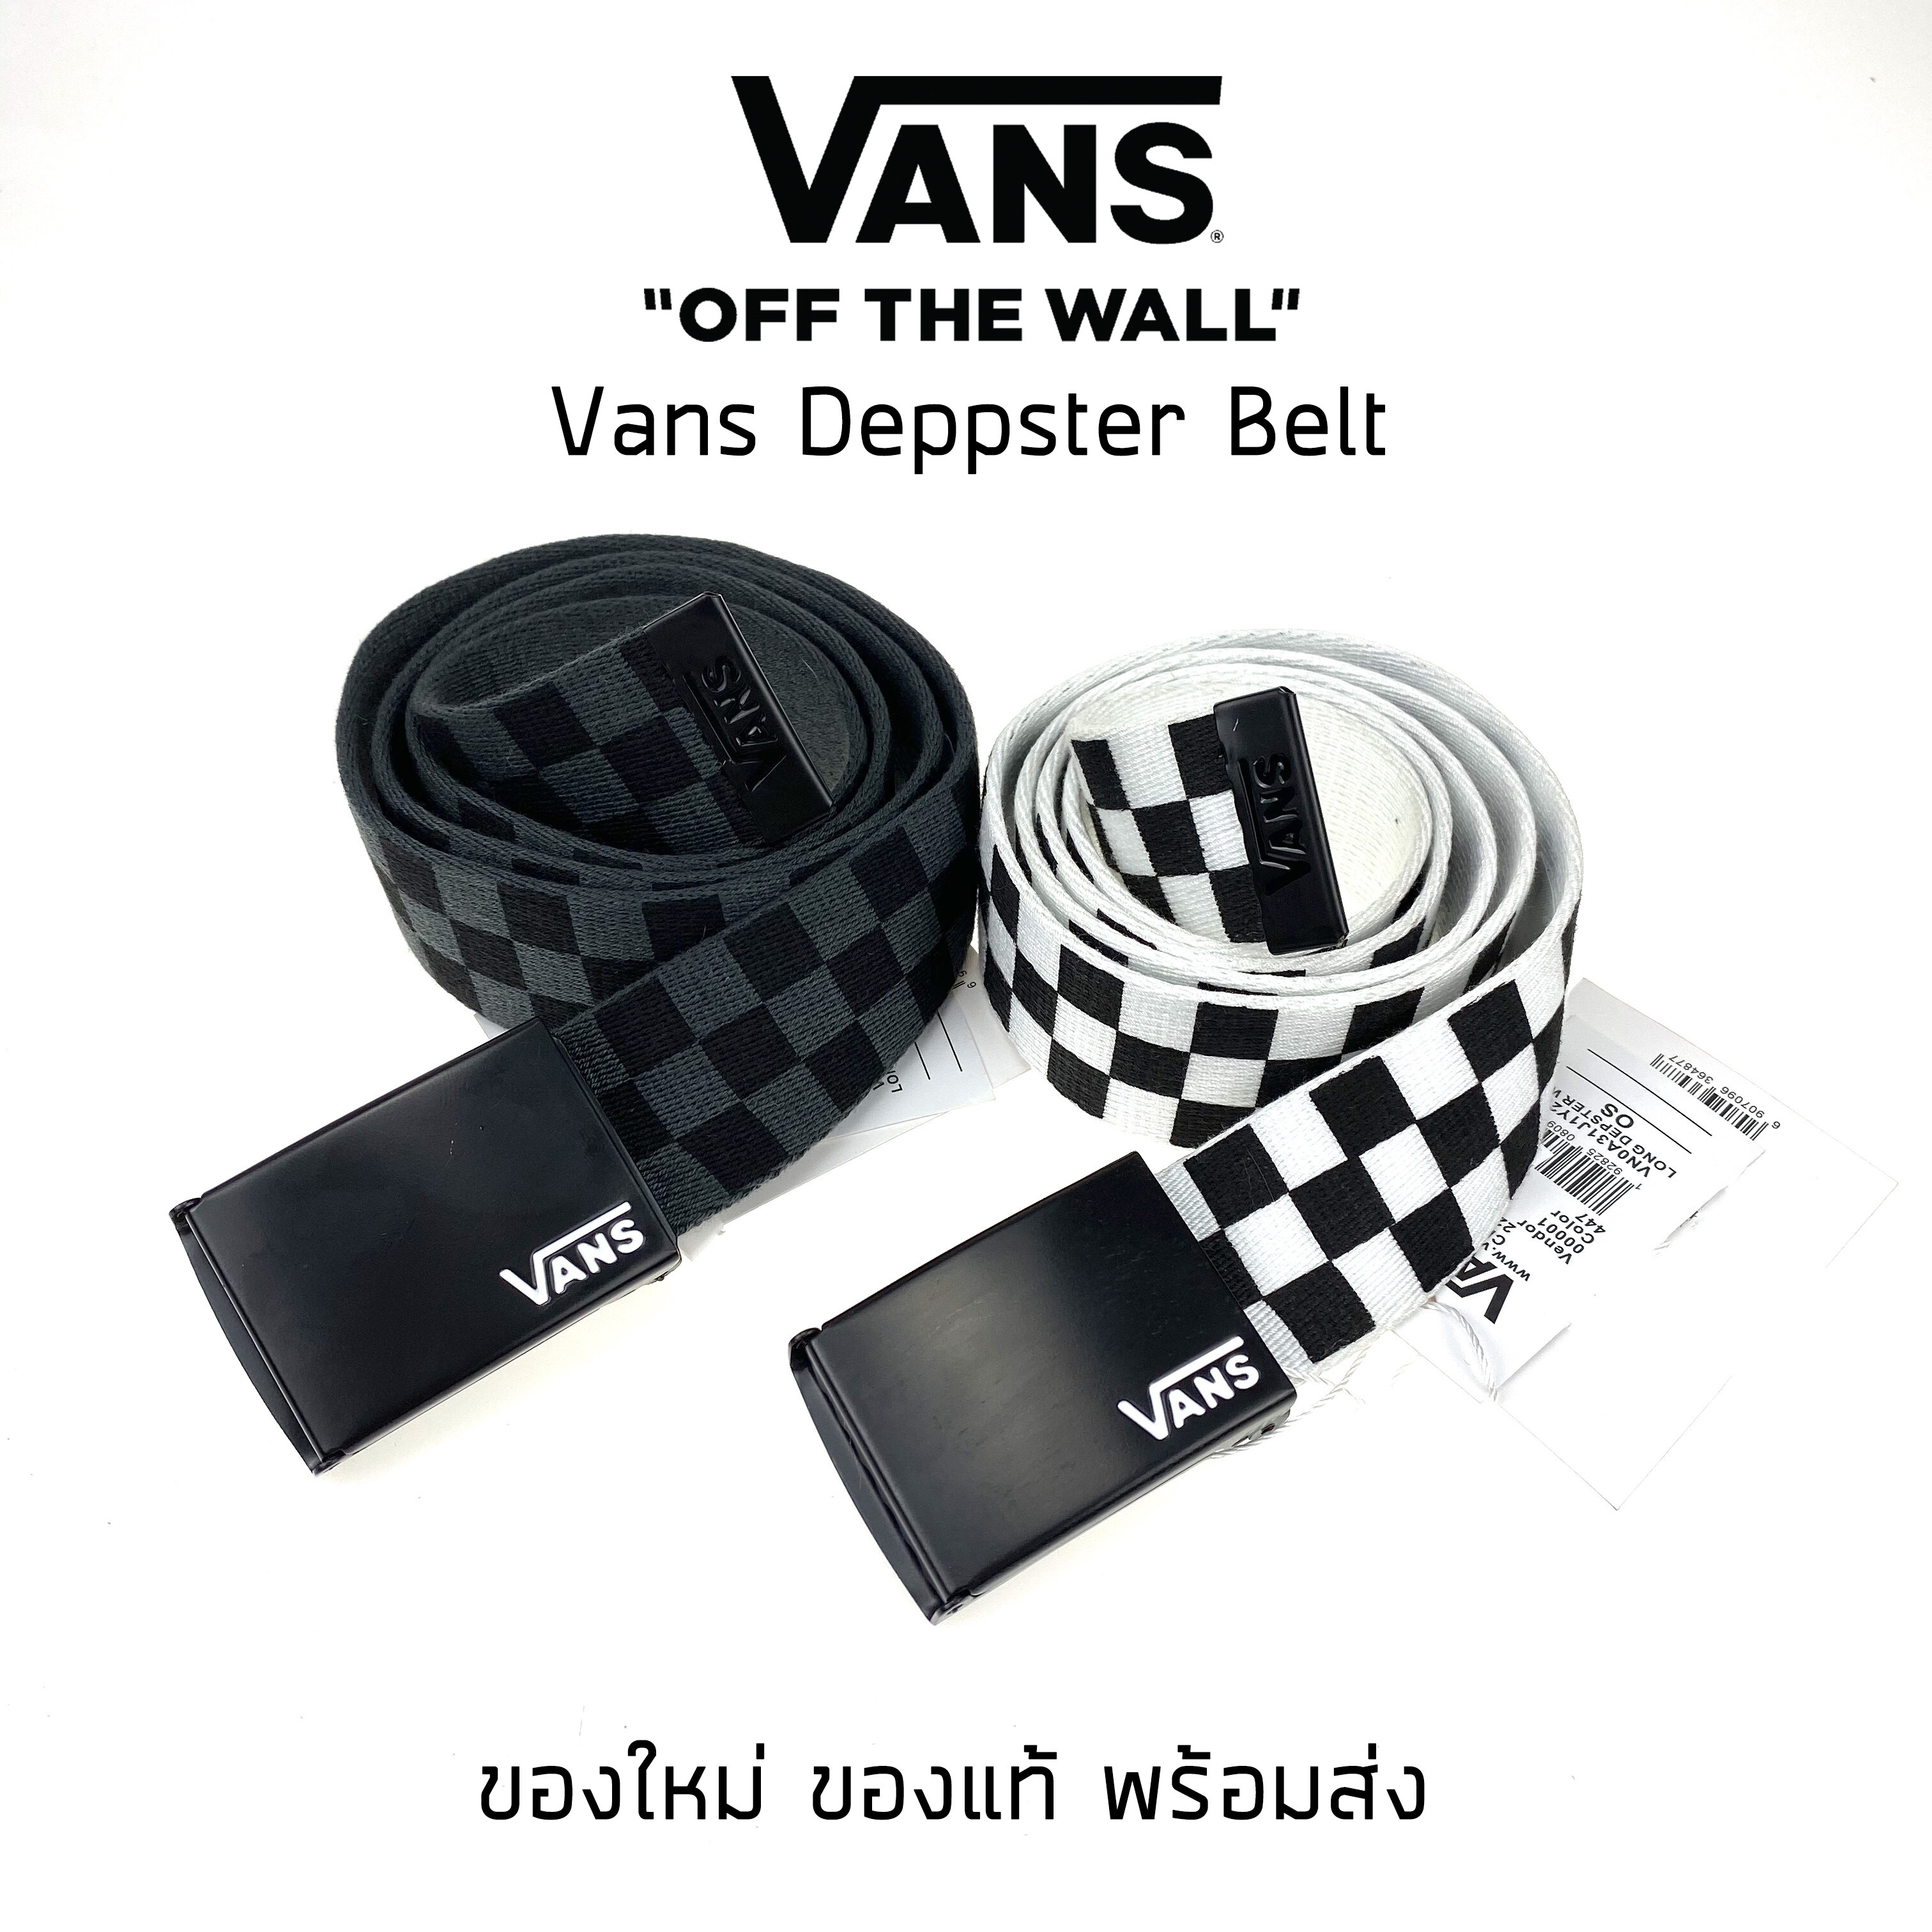 เข็มขัดผ้า Vans แบบหัวหนีบ Vans Deppster II Web Belt ของใหม่ ของแท้ พร้อมส่ง สี Black-White ขนาด Int  One size สี Black-Whiteขนาด Int  One size